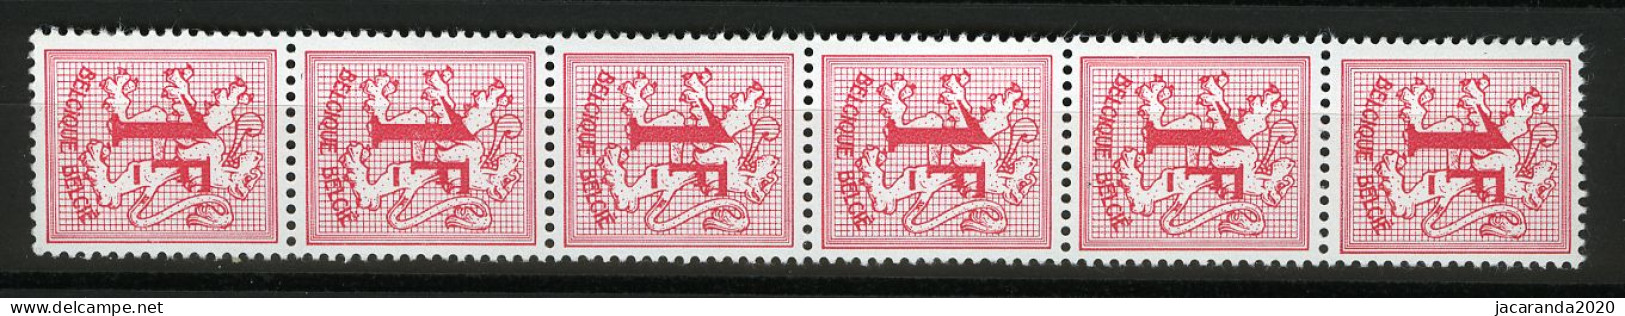 België R9 - Cijfer Op Heraldieke Leeuw - 1F - Strook Van 6 - Bande De 6  - Coil Stamps